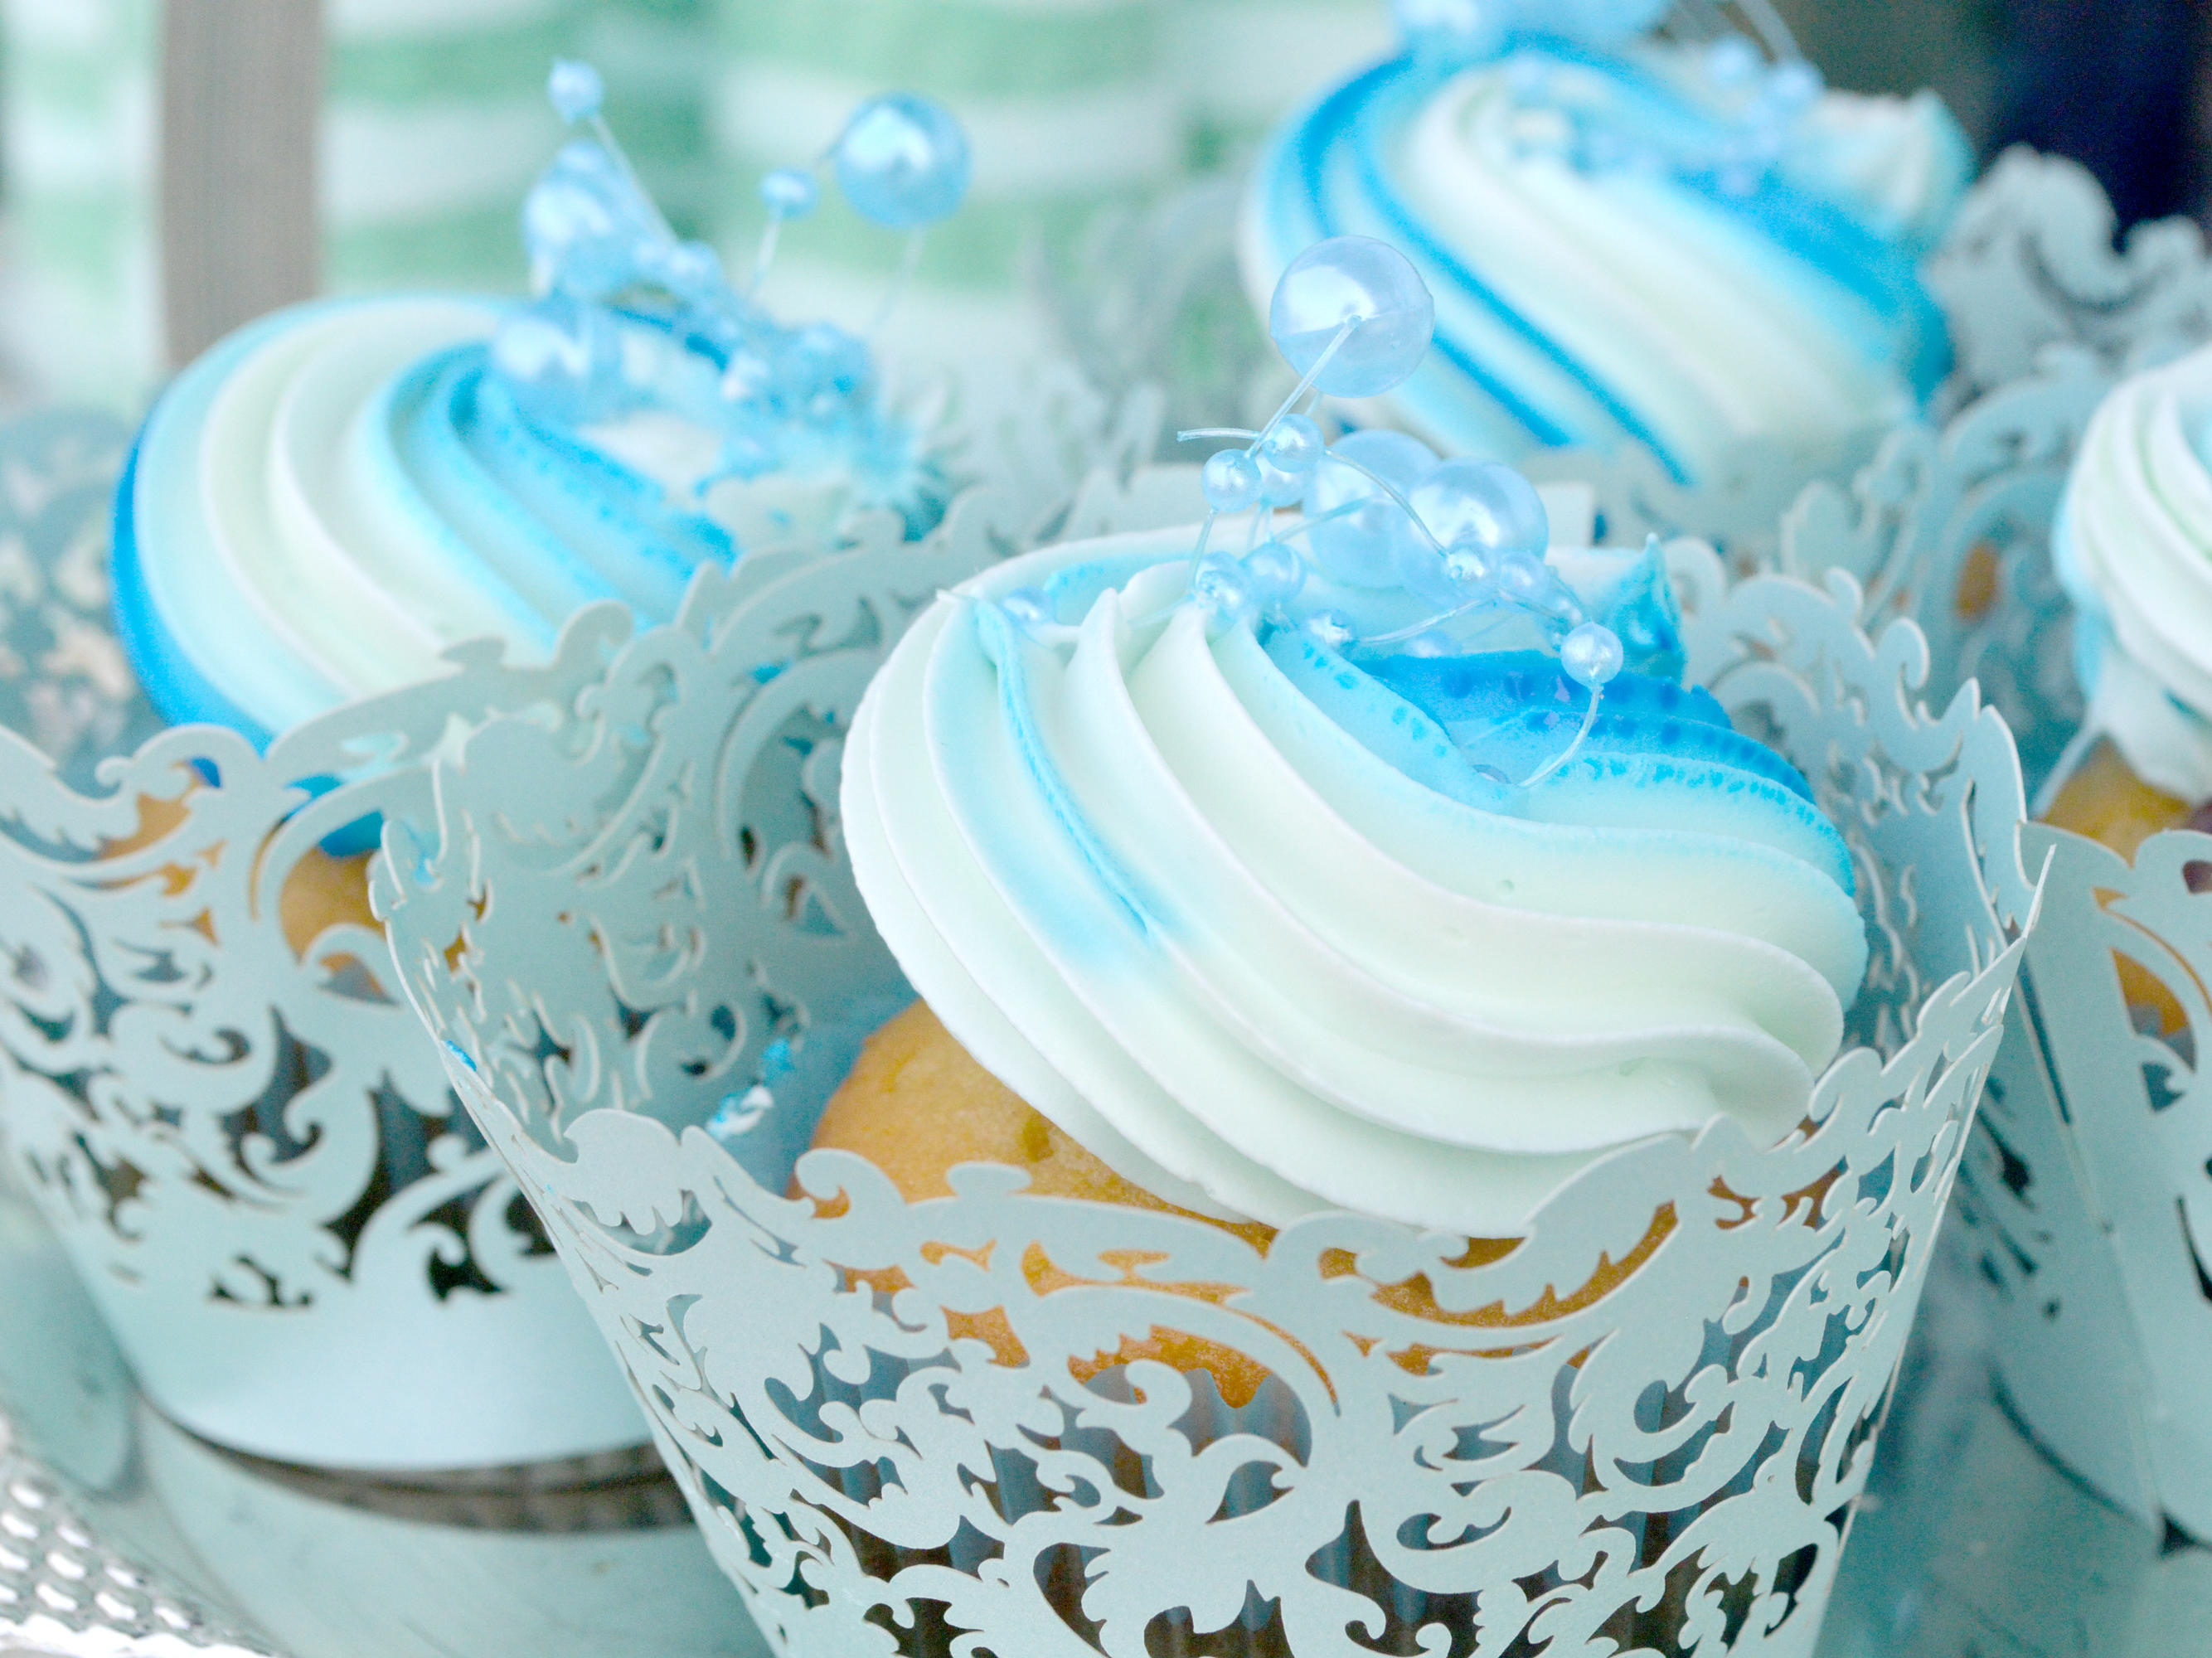 海的样子 — 蓝色唯美主题婚礼甜品台